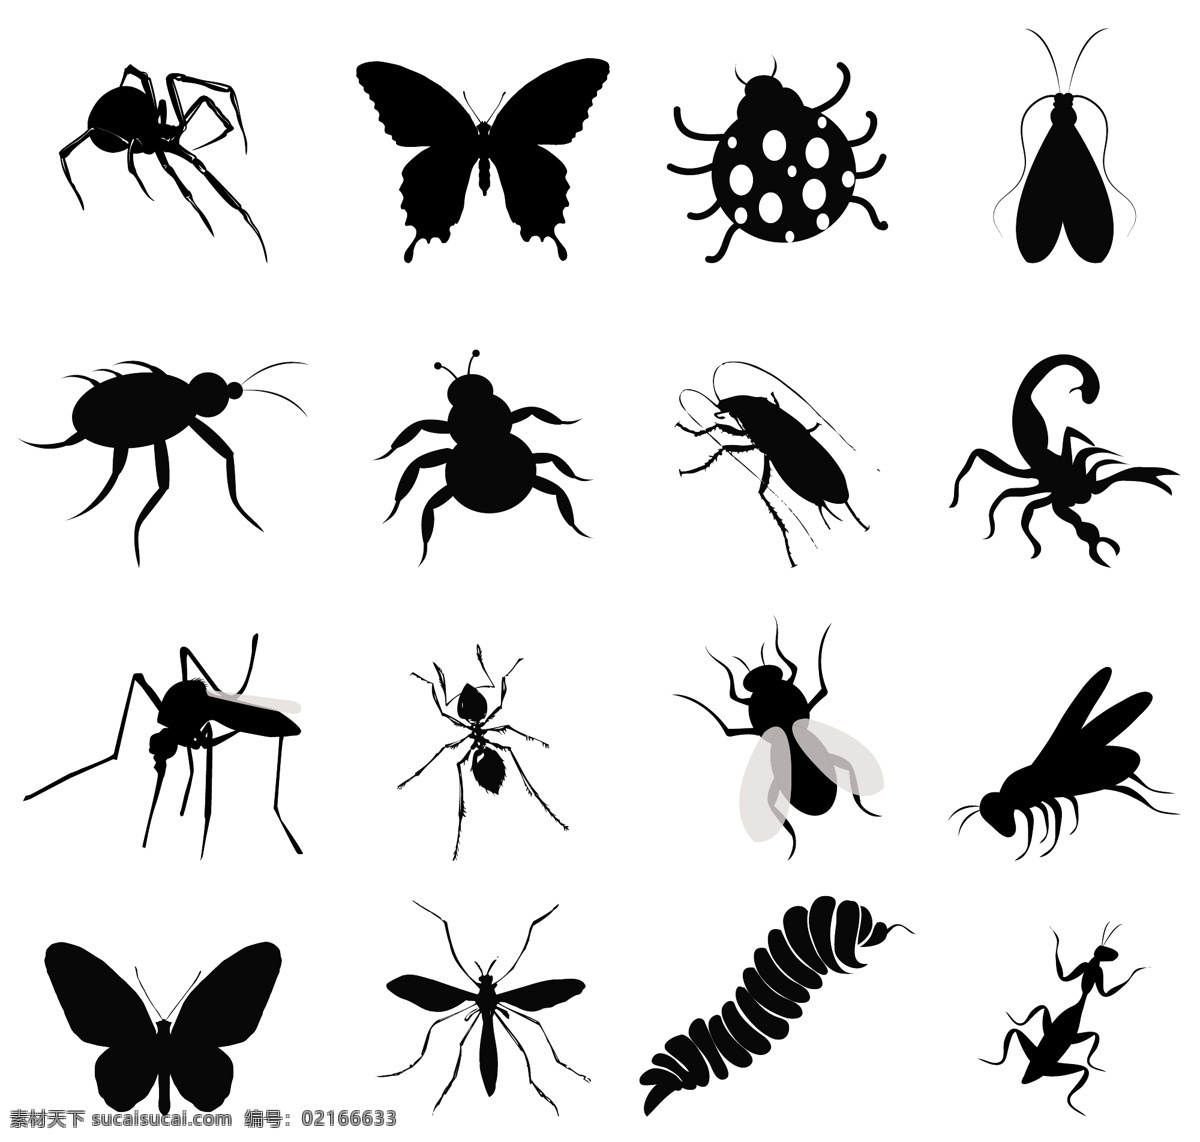 昆虫 剪影 图标 矢量图 平面 蝴蝶 蜘蛛 七星瓢虫 蚂蚁 蚊子 苍蝇 毛毛虫 蝎子 生物世界